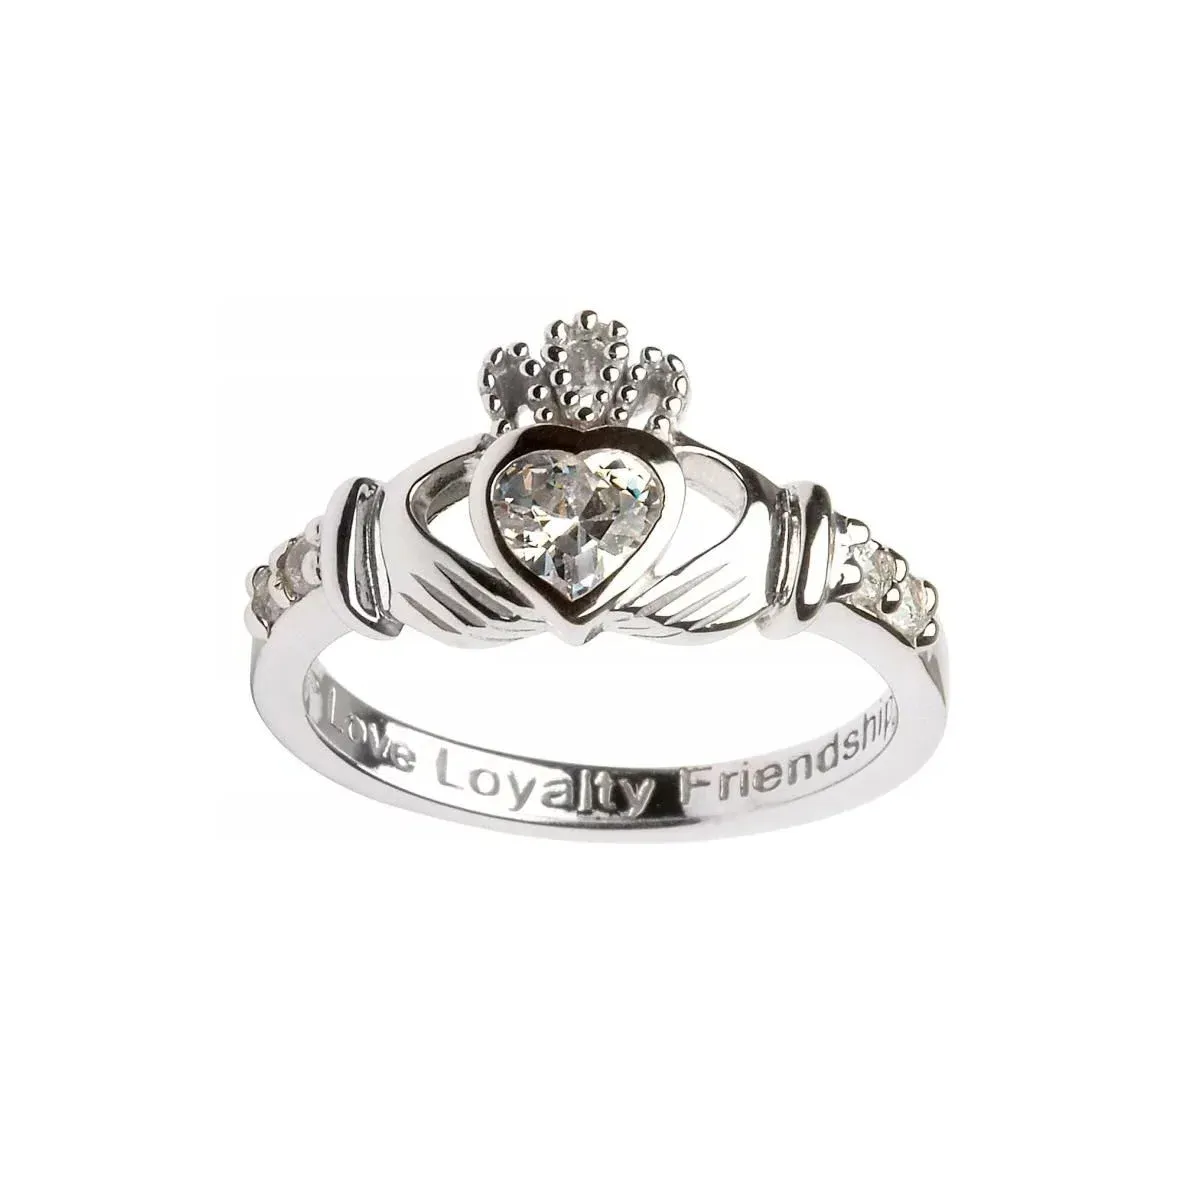 April Birthstone Claddagh Ring - Love, Loyalty, Friendship